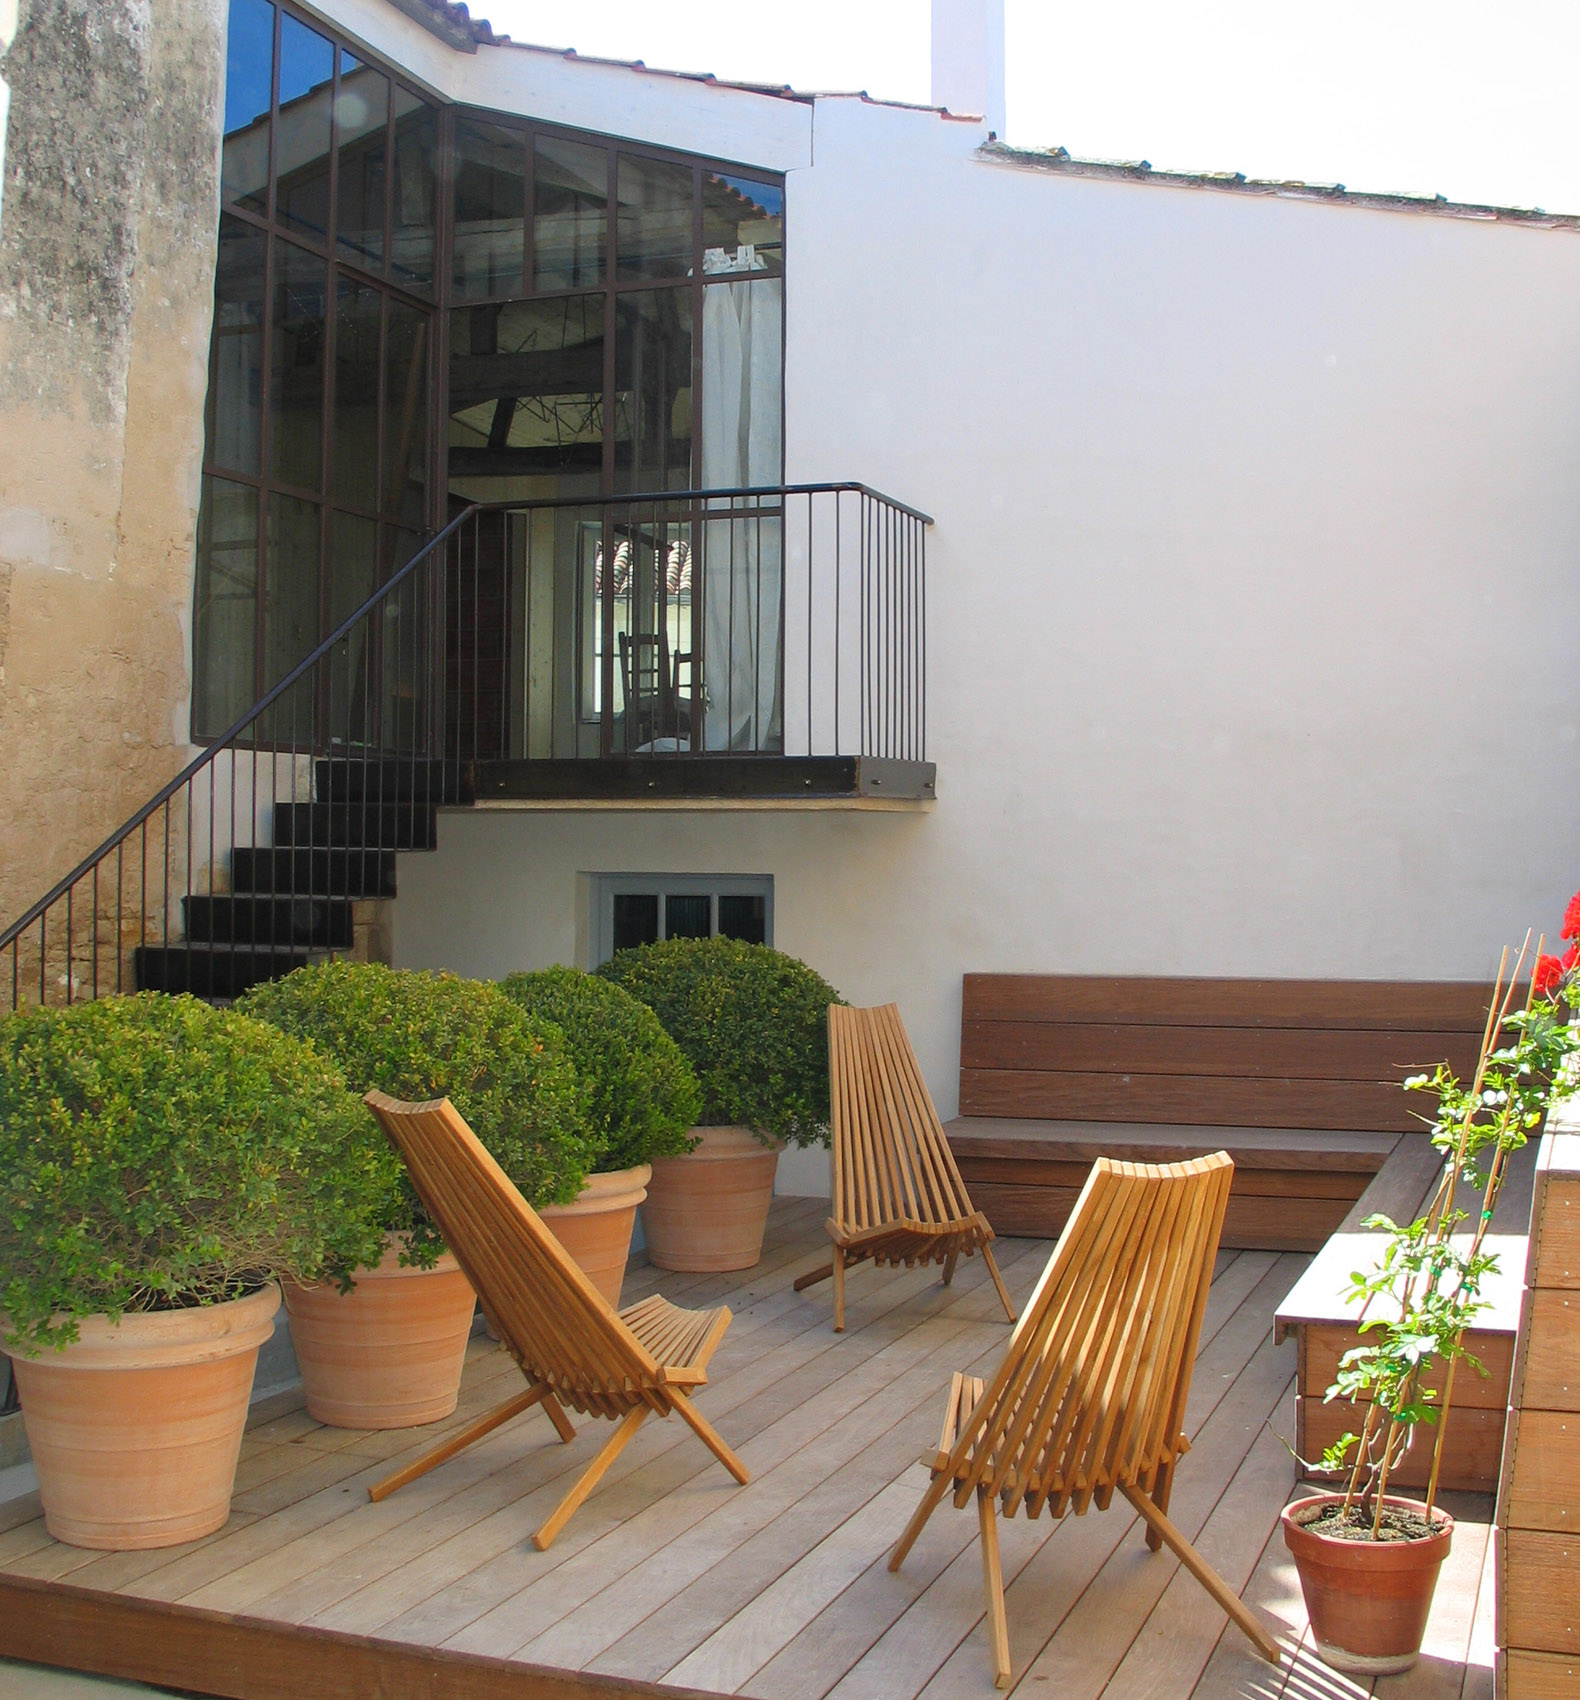 Rent room with terrace for seminar Ars en ré - Hotel Le Senechal